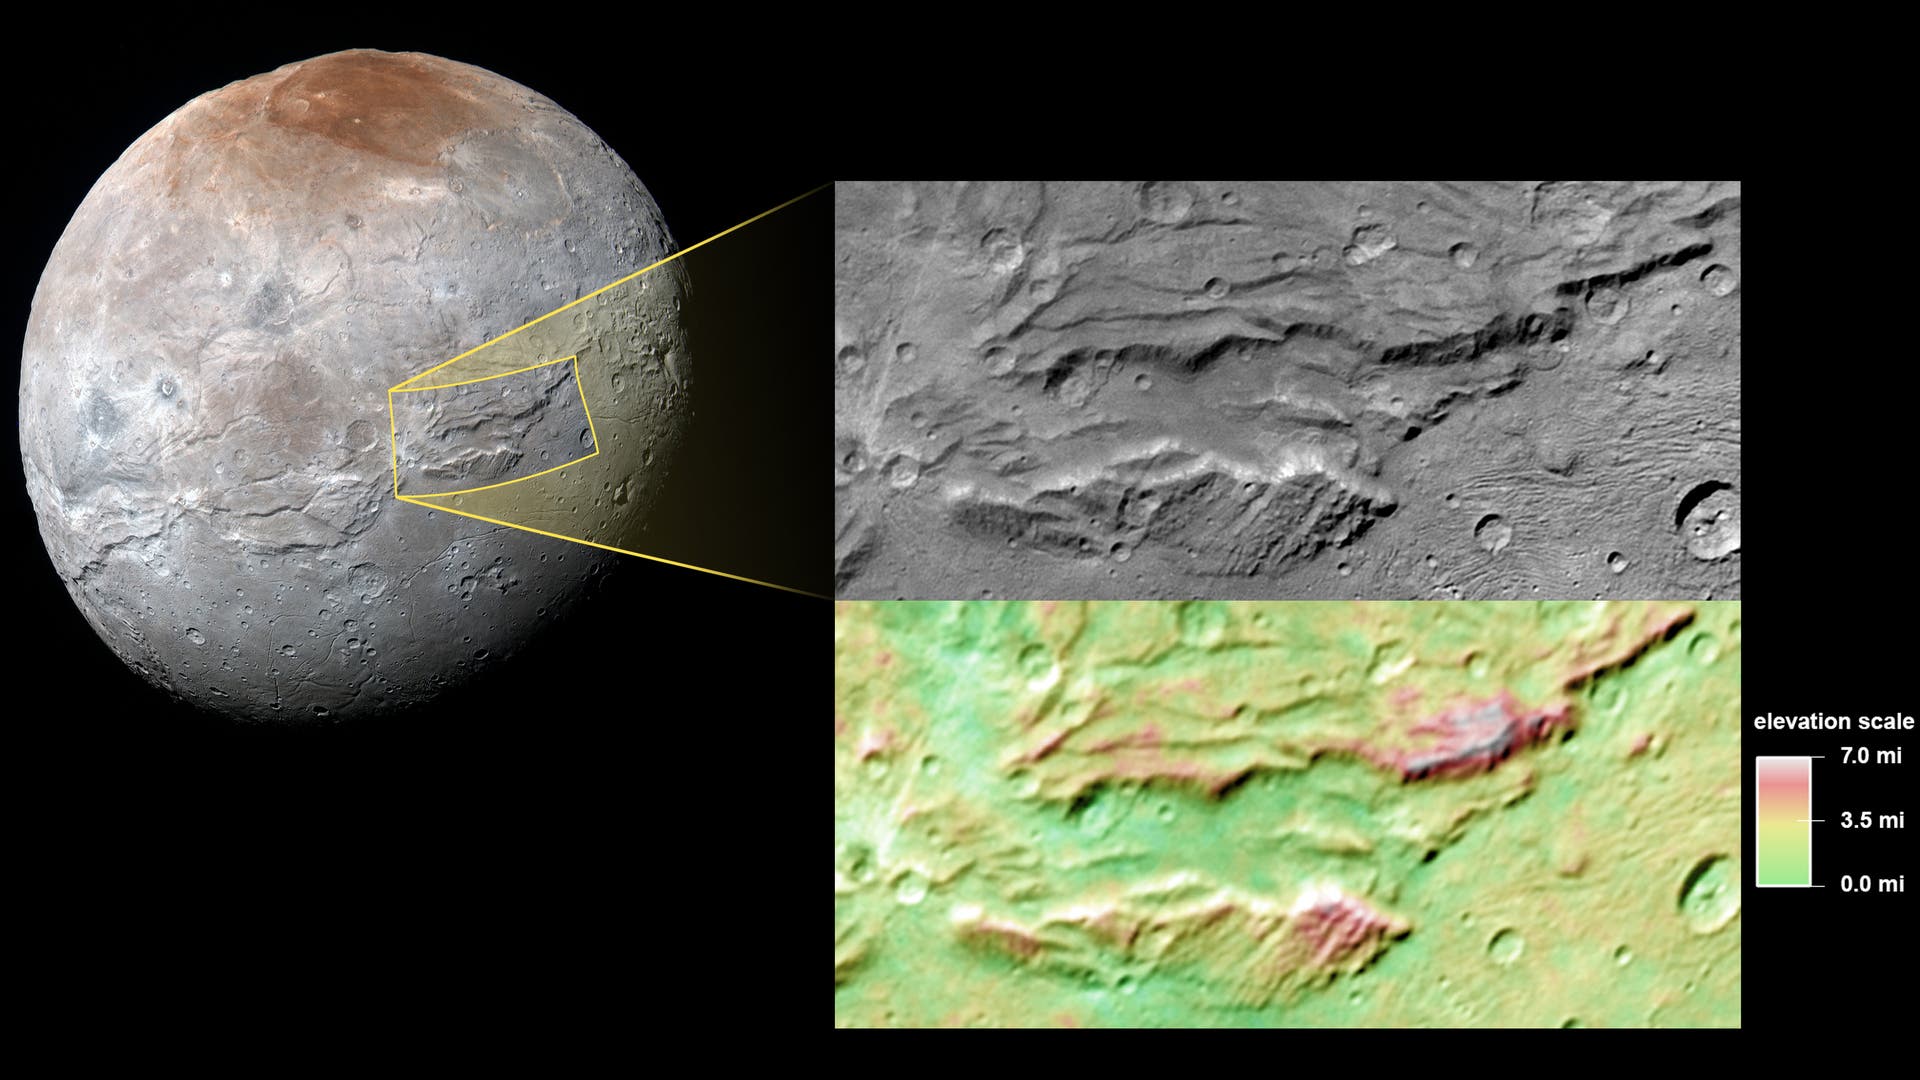 Ein großer Grabenbruch auf dem Plutomond Charon